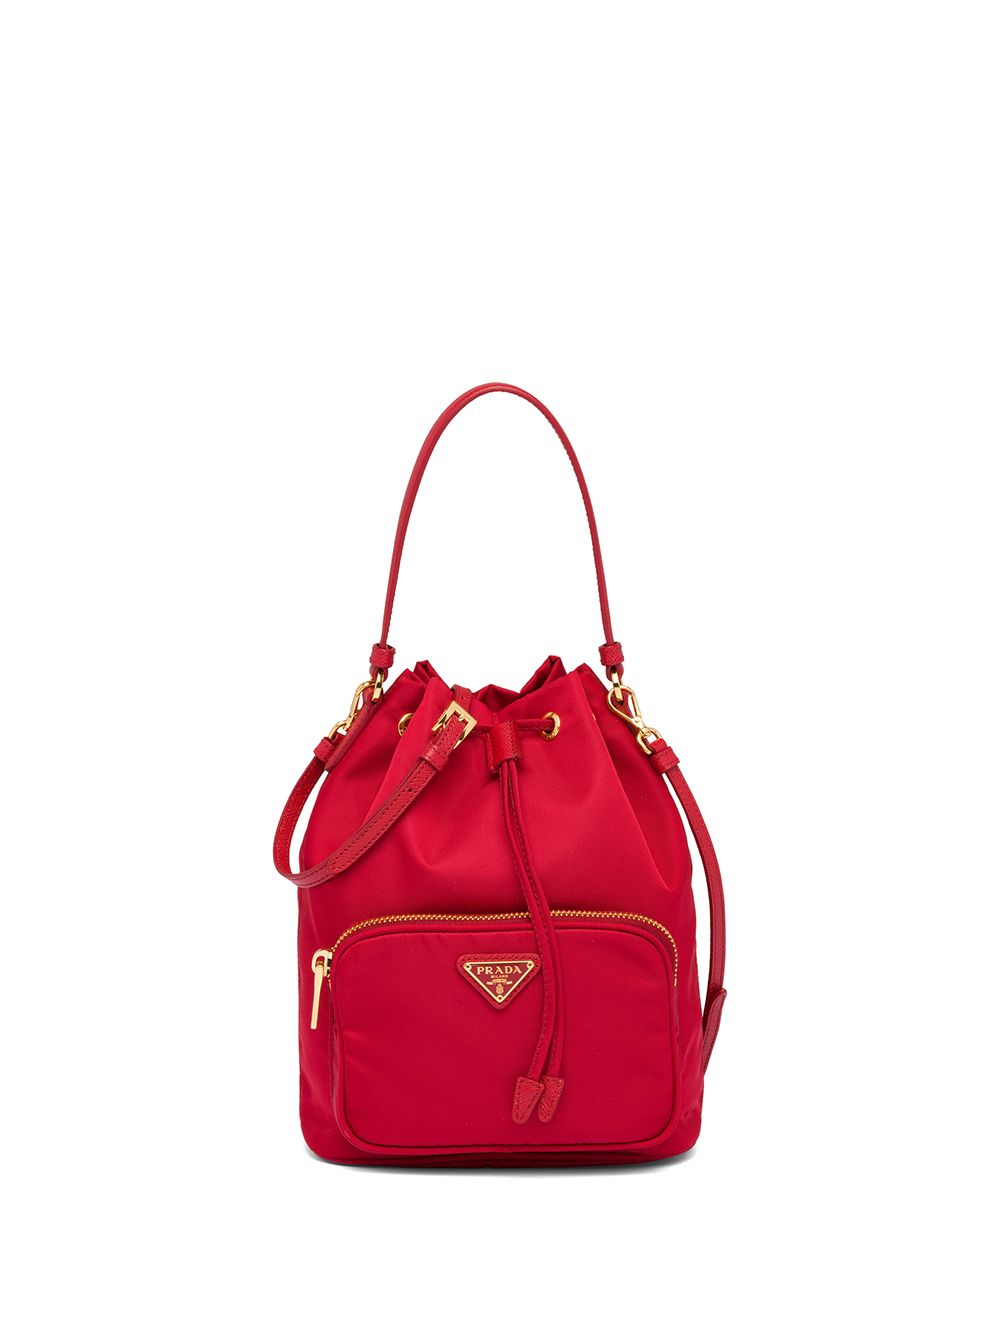 prada red leather shoulder bag